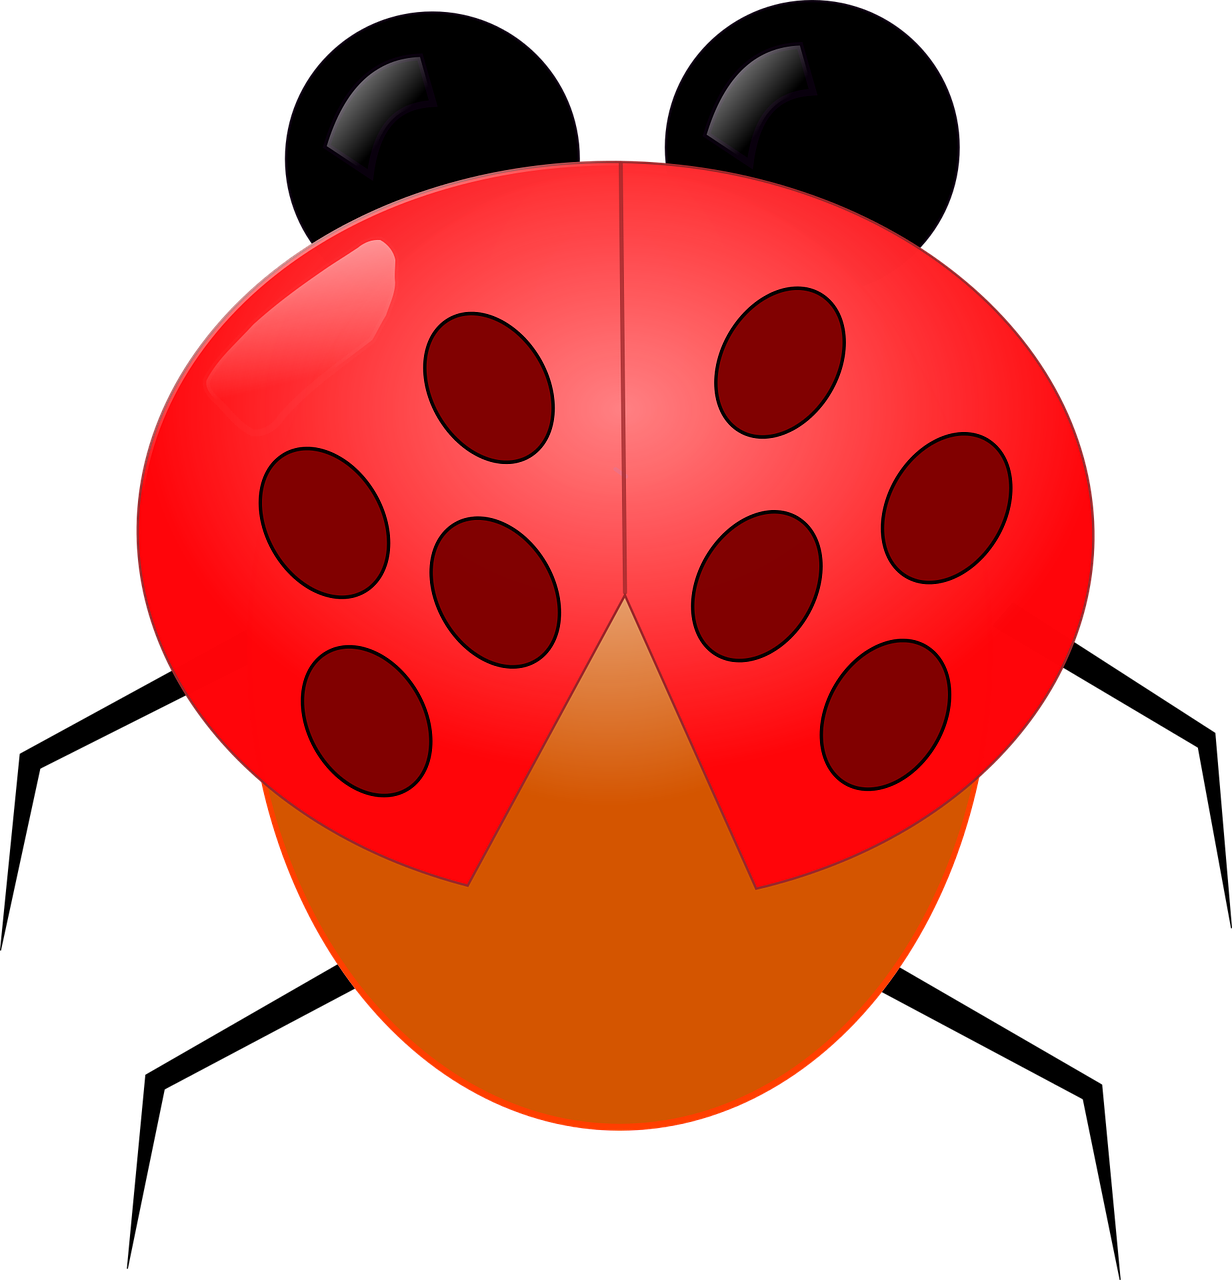 ladybug animal insects free photo